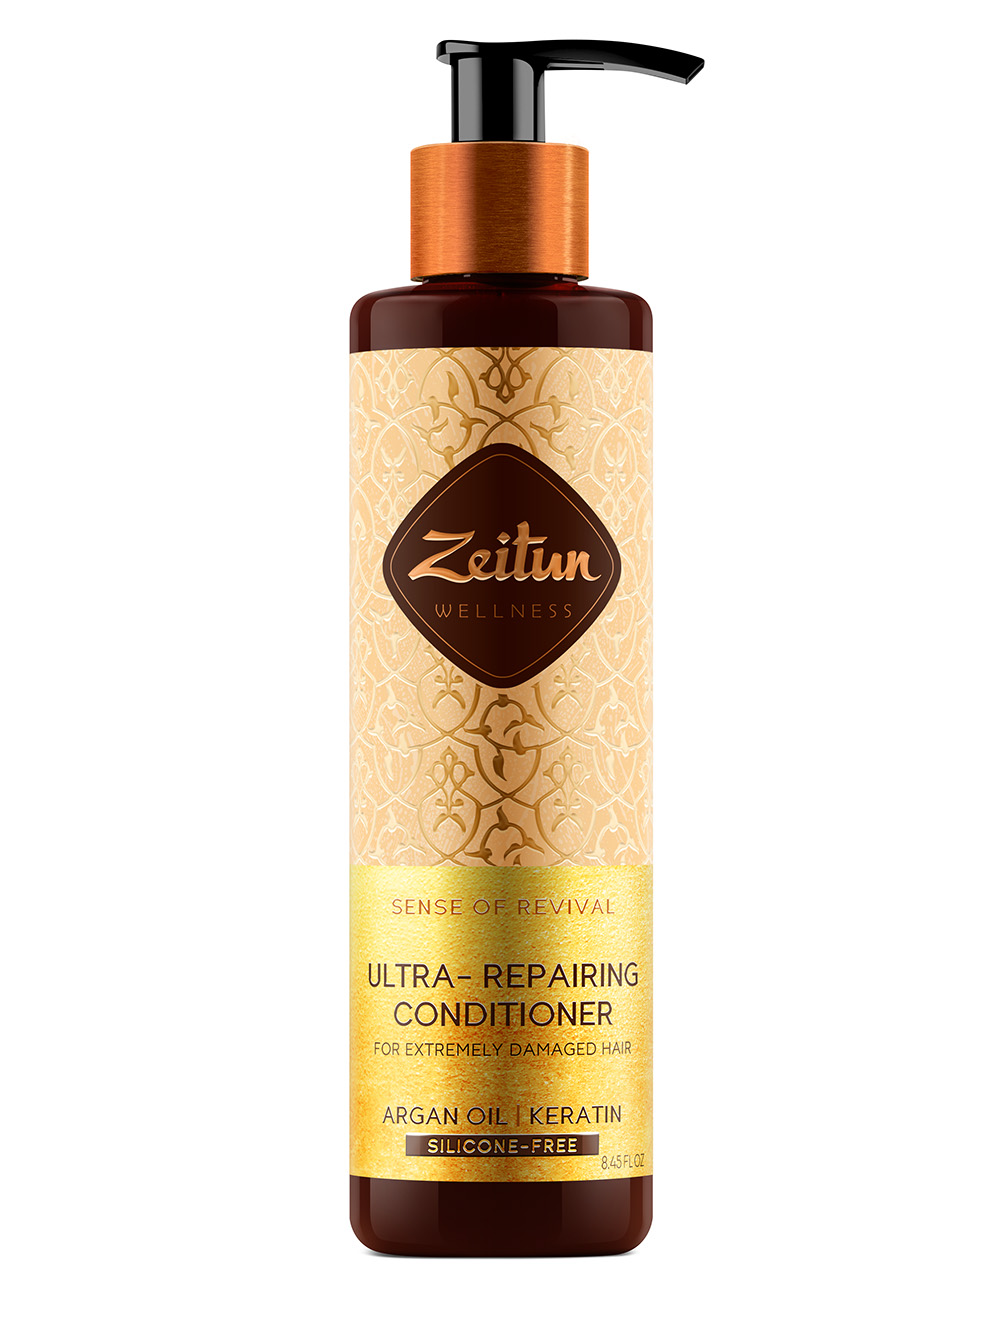 Zeitun Бальзам-кондиционер для поврежденных волос Ритуал восстановления, 250 мл (Zeitun, Wellness) zeitun бальзам кондиционер для поврежденных волос ритуал восстановления 250 мл